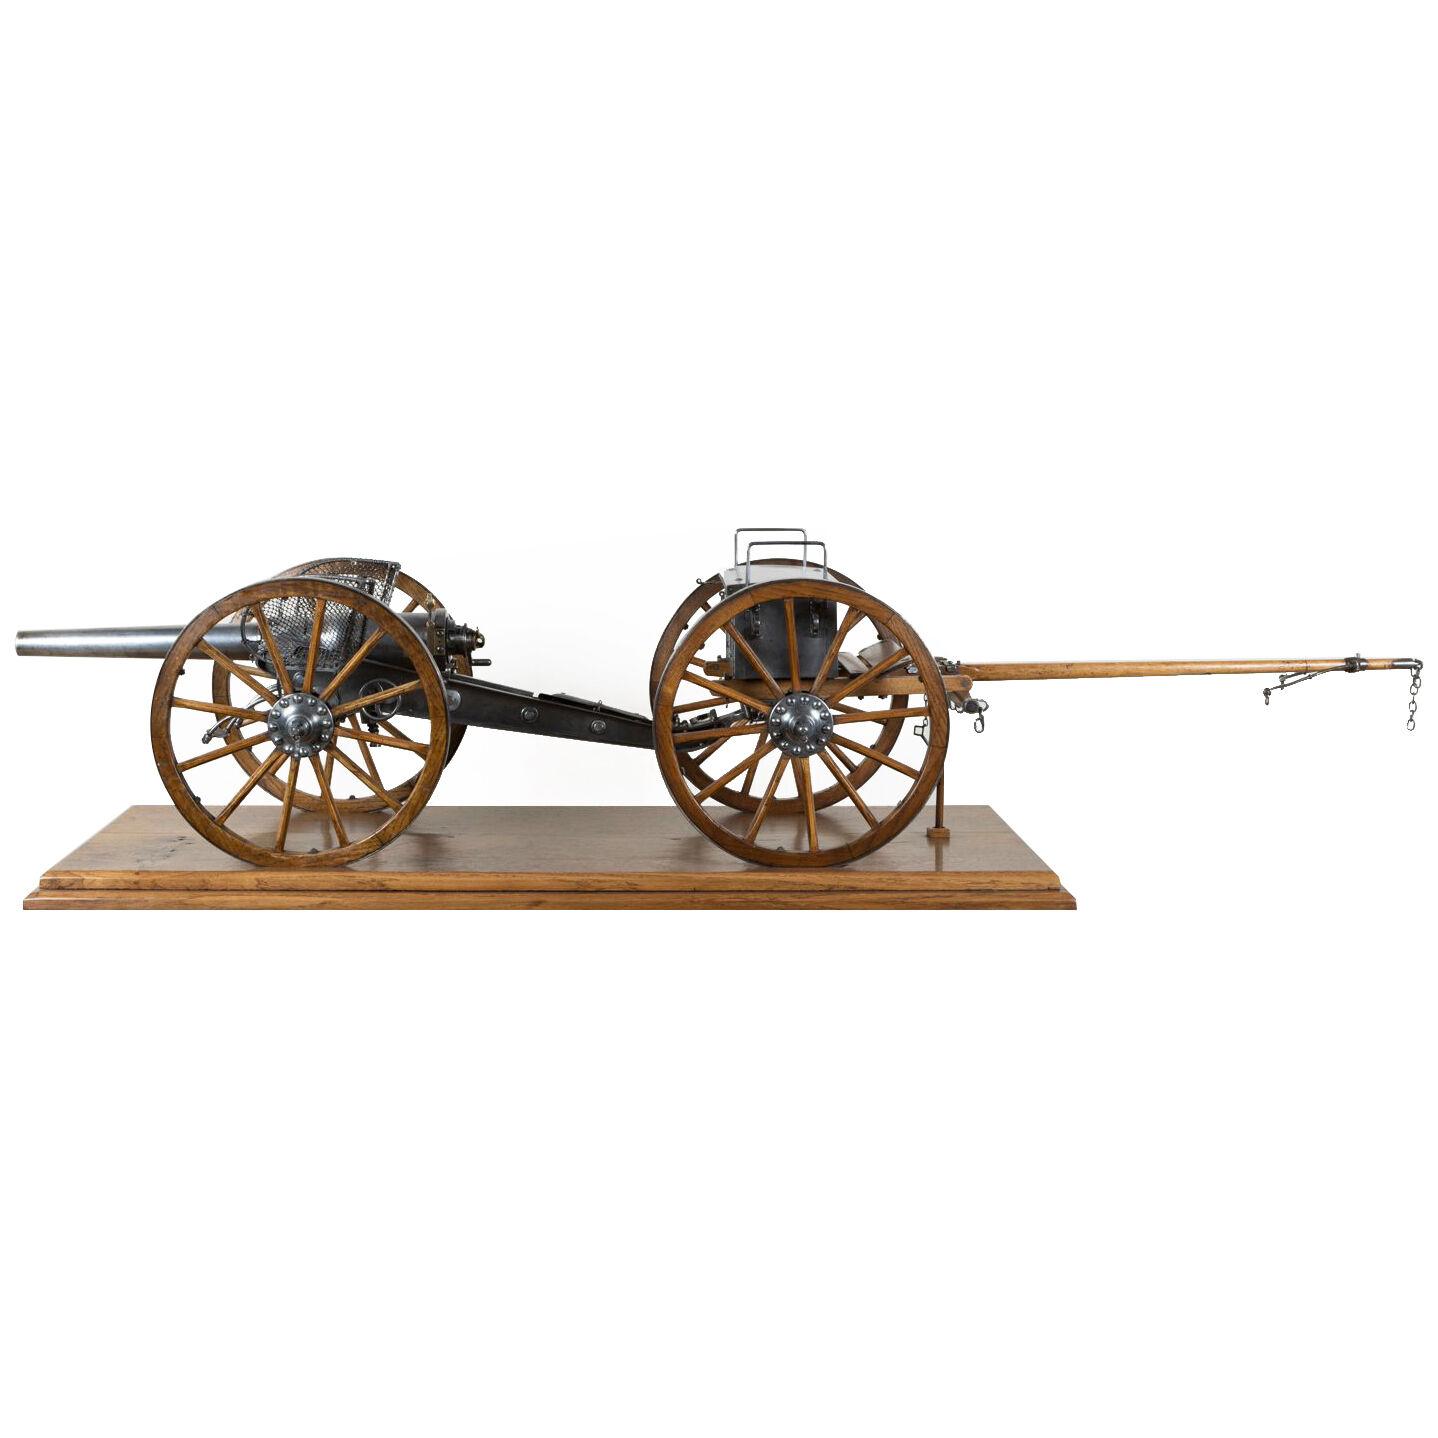 Scale model of a 7 Modèle 1867 cannon